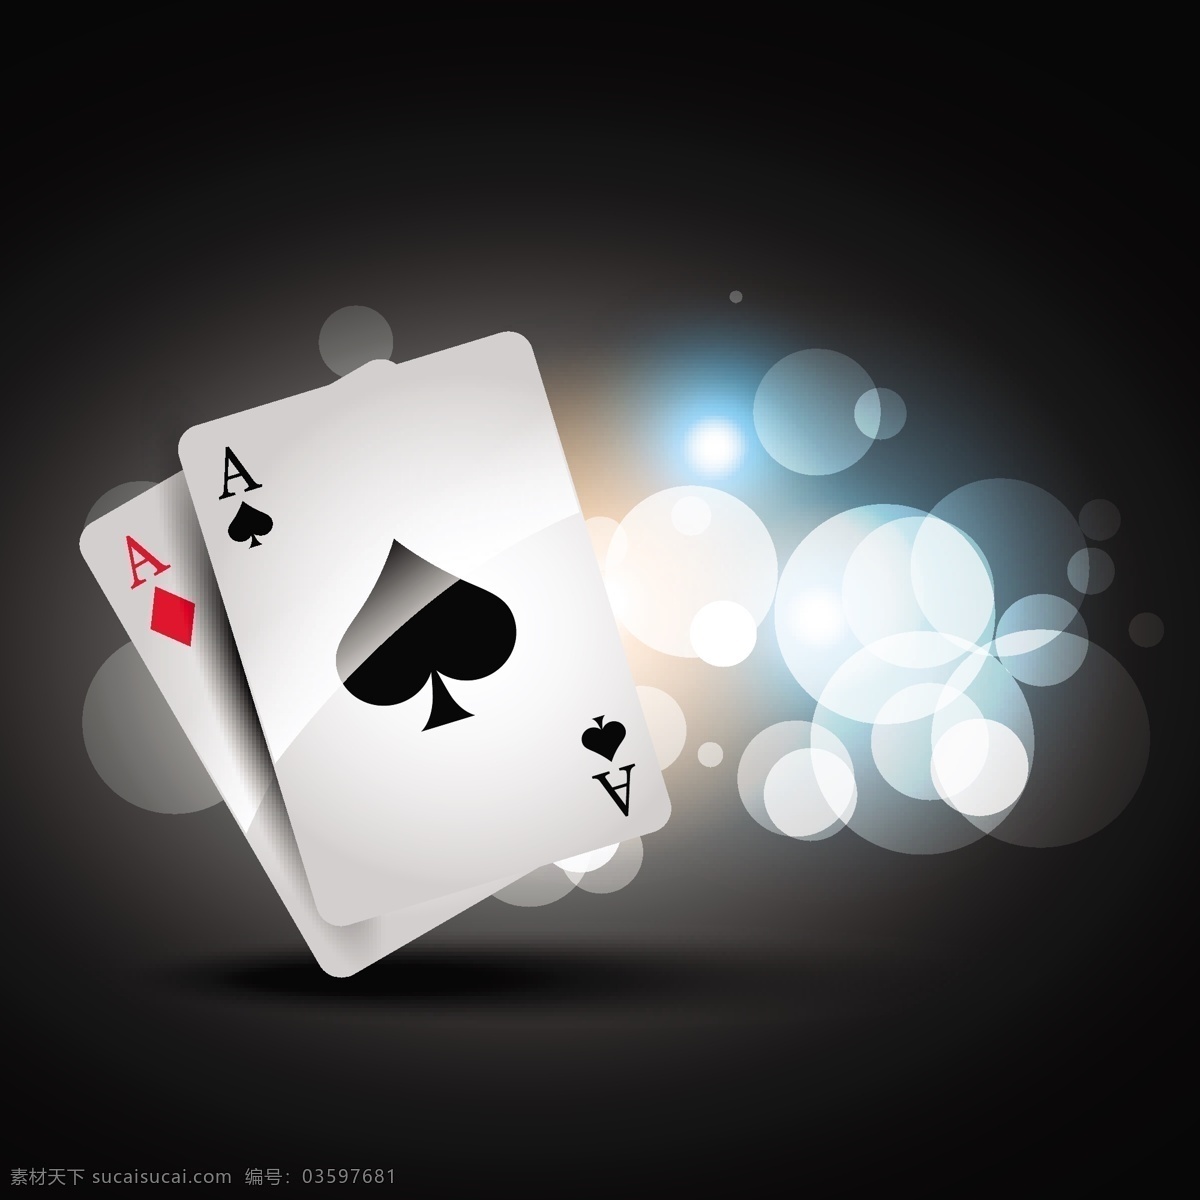 扑克游戏背景 扑克 游戏 扑克赛 比赛 娱乐 游戏素材 扑克素材 动感 休闲娱乐体育 生活百科 休闲娱乐